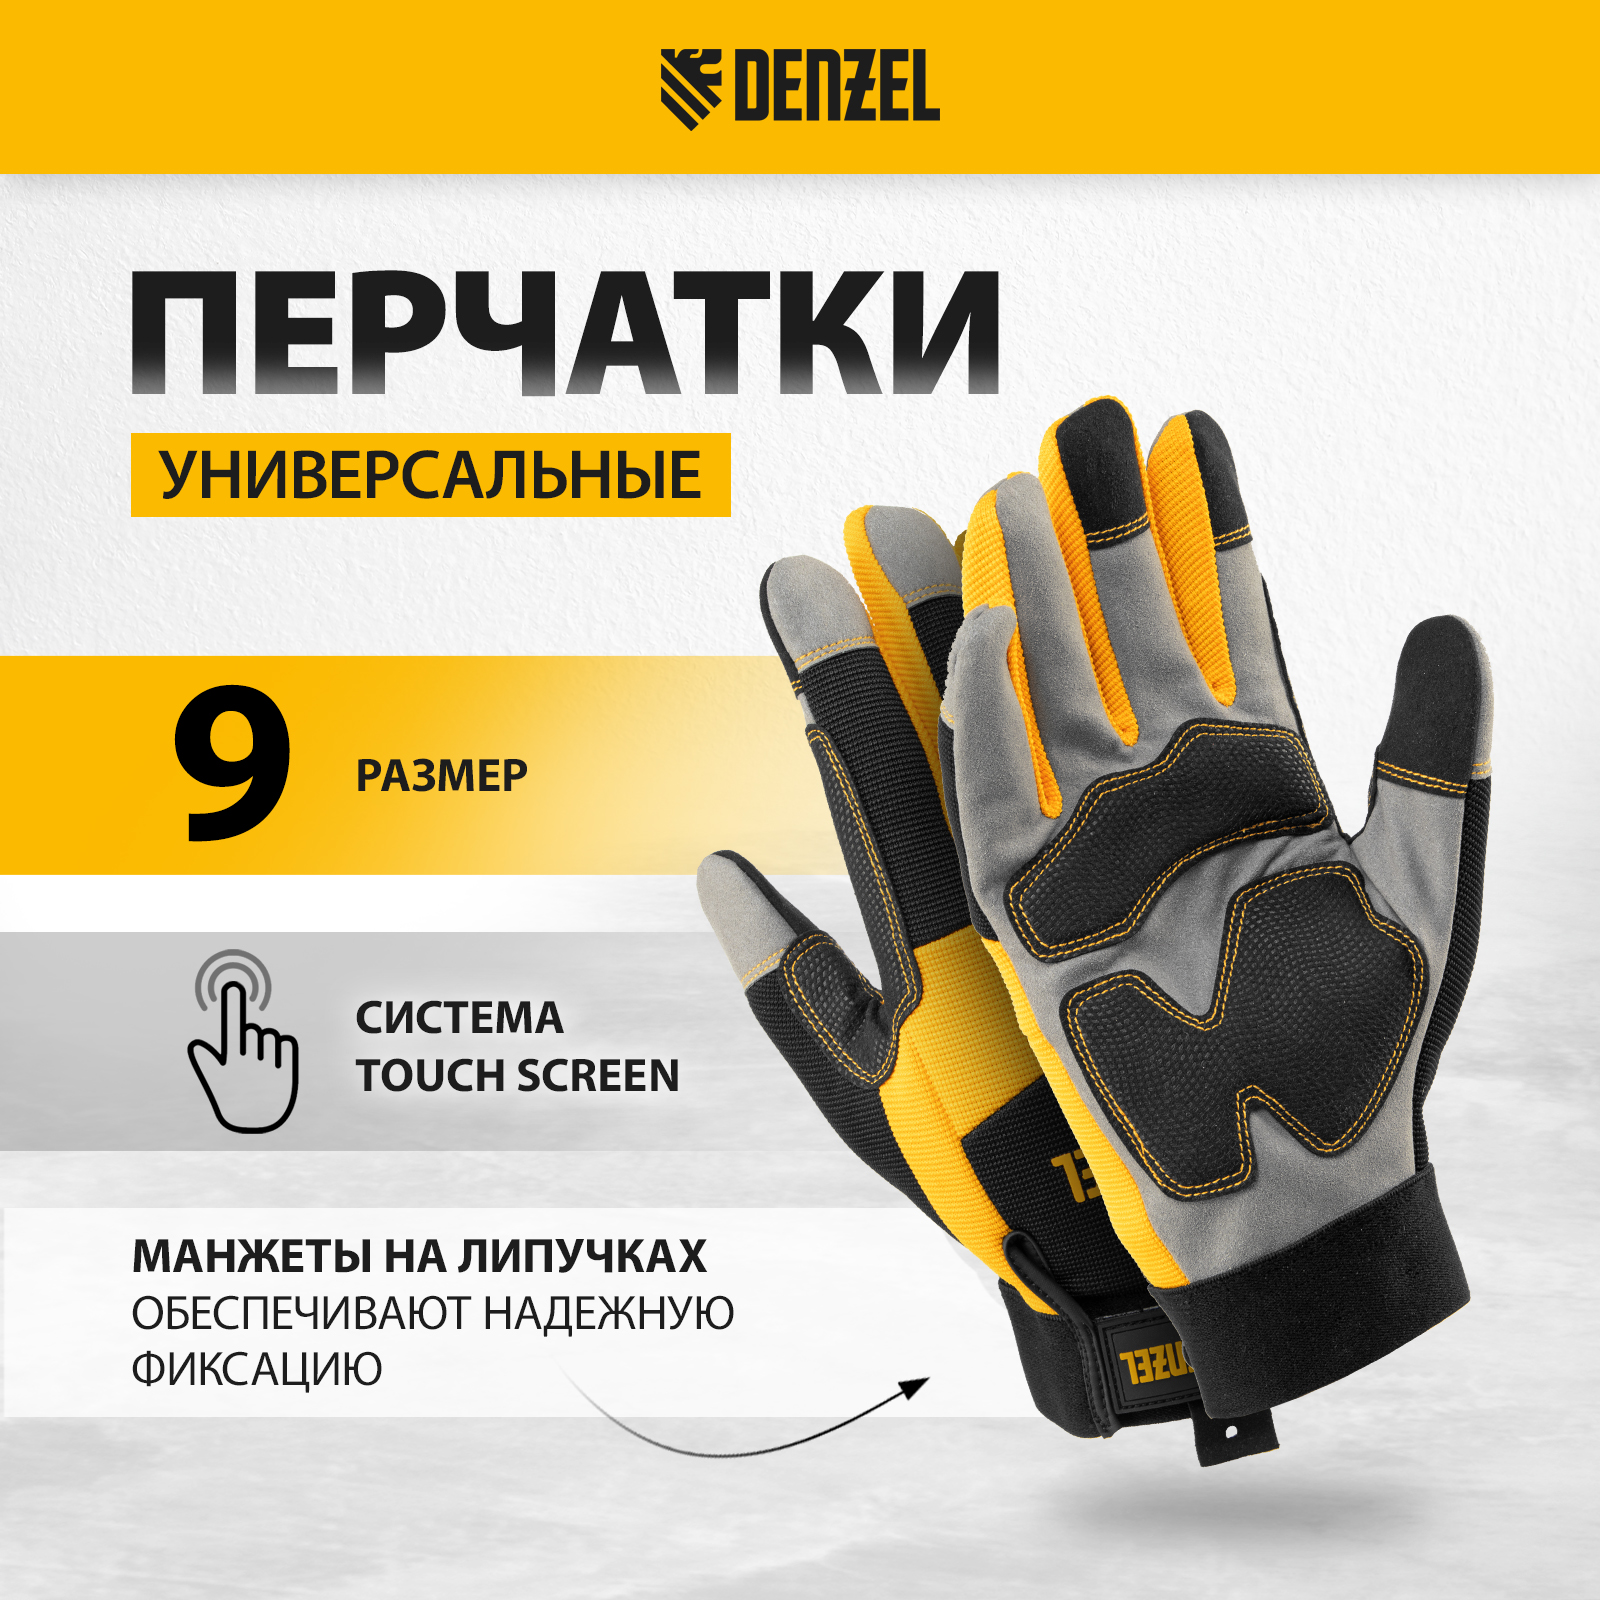 Перчатки универсальные DENZEL усиленные размер 9 67990 усиленные нитриловые перчатки лето